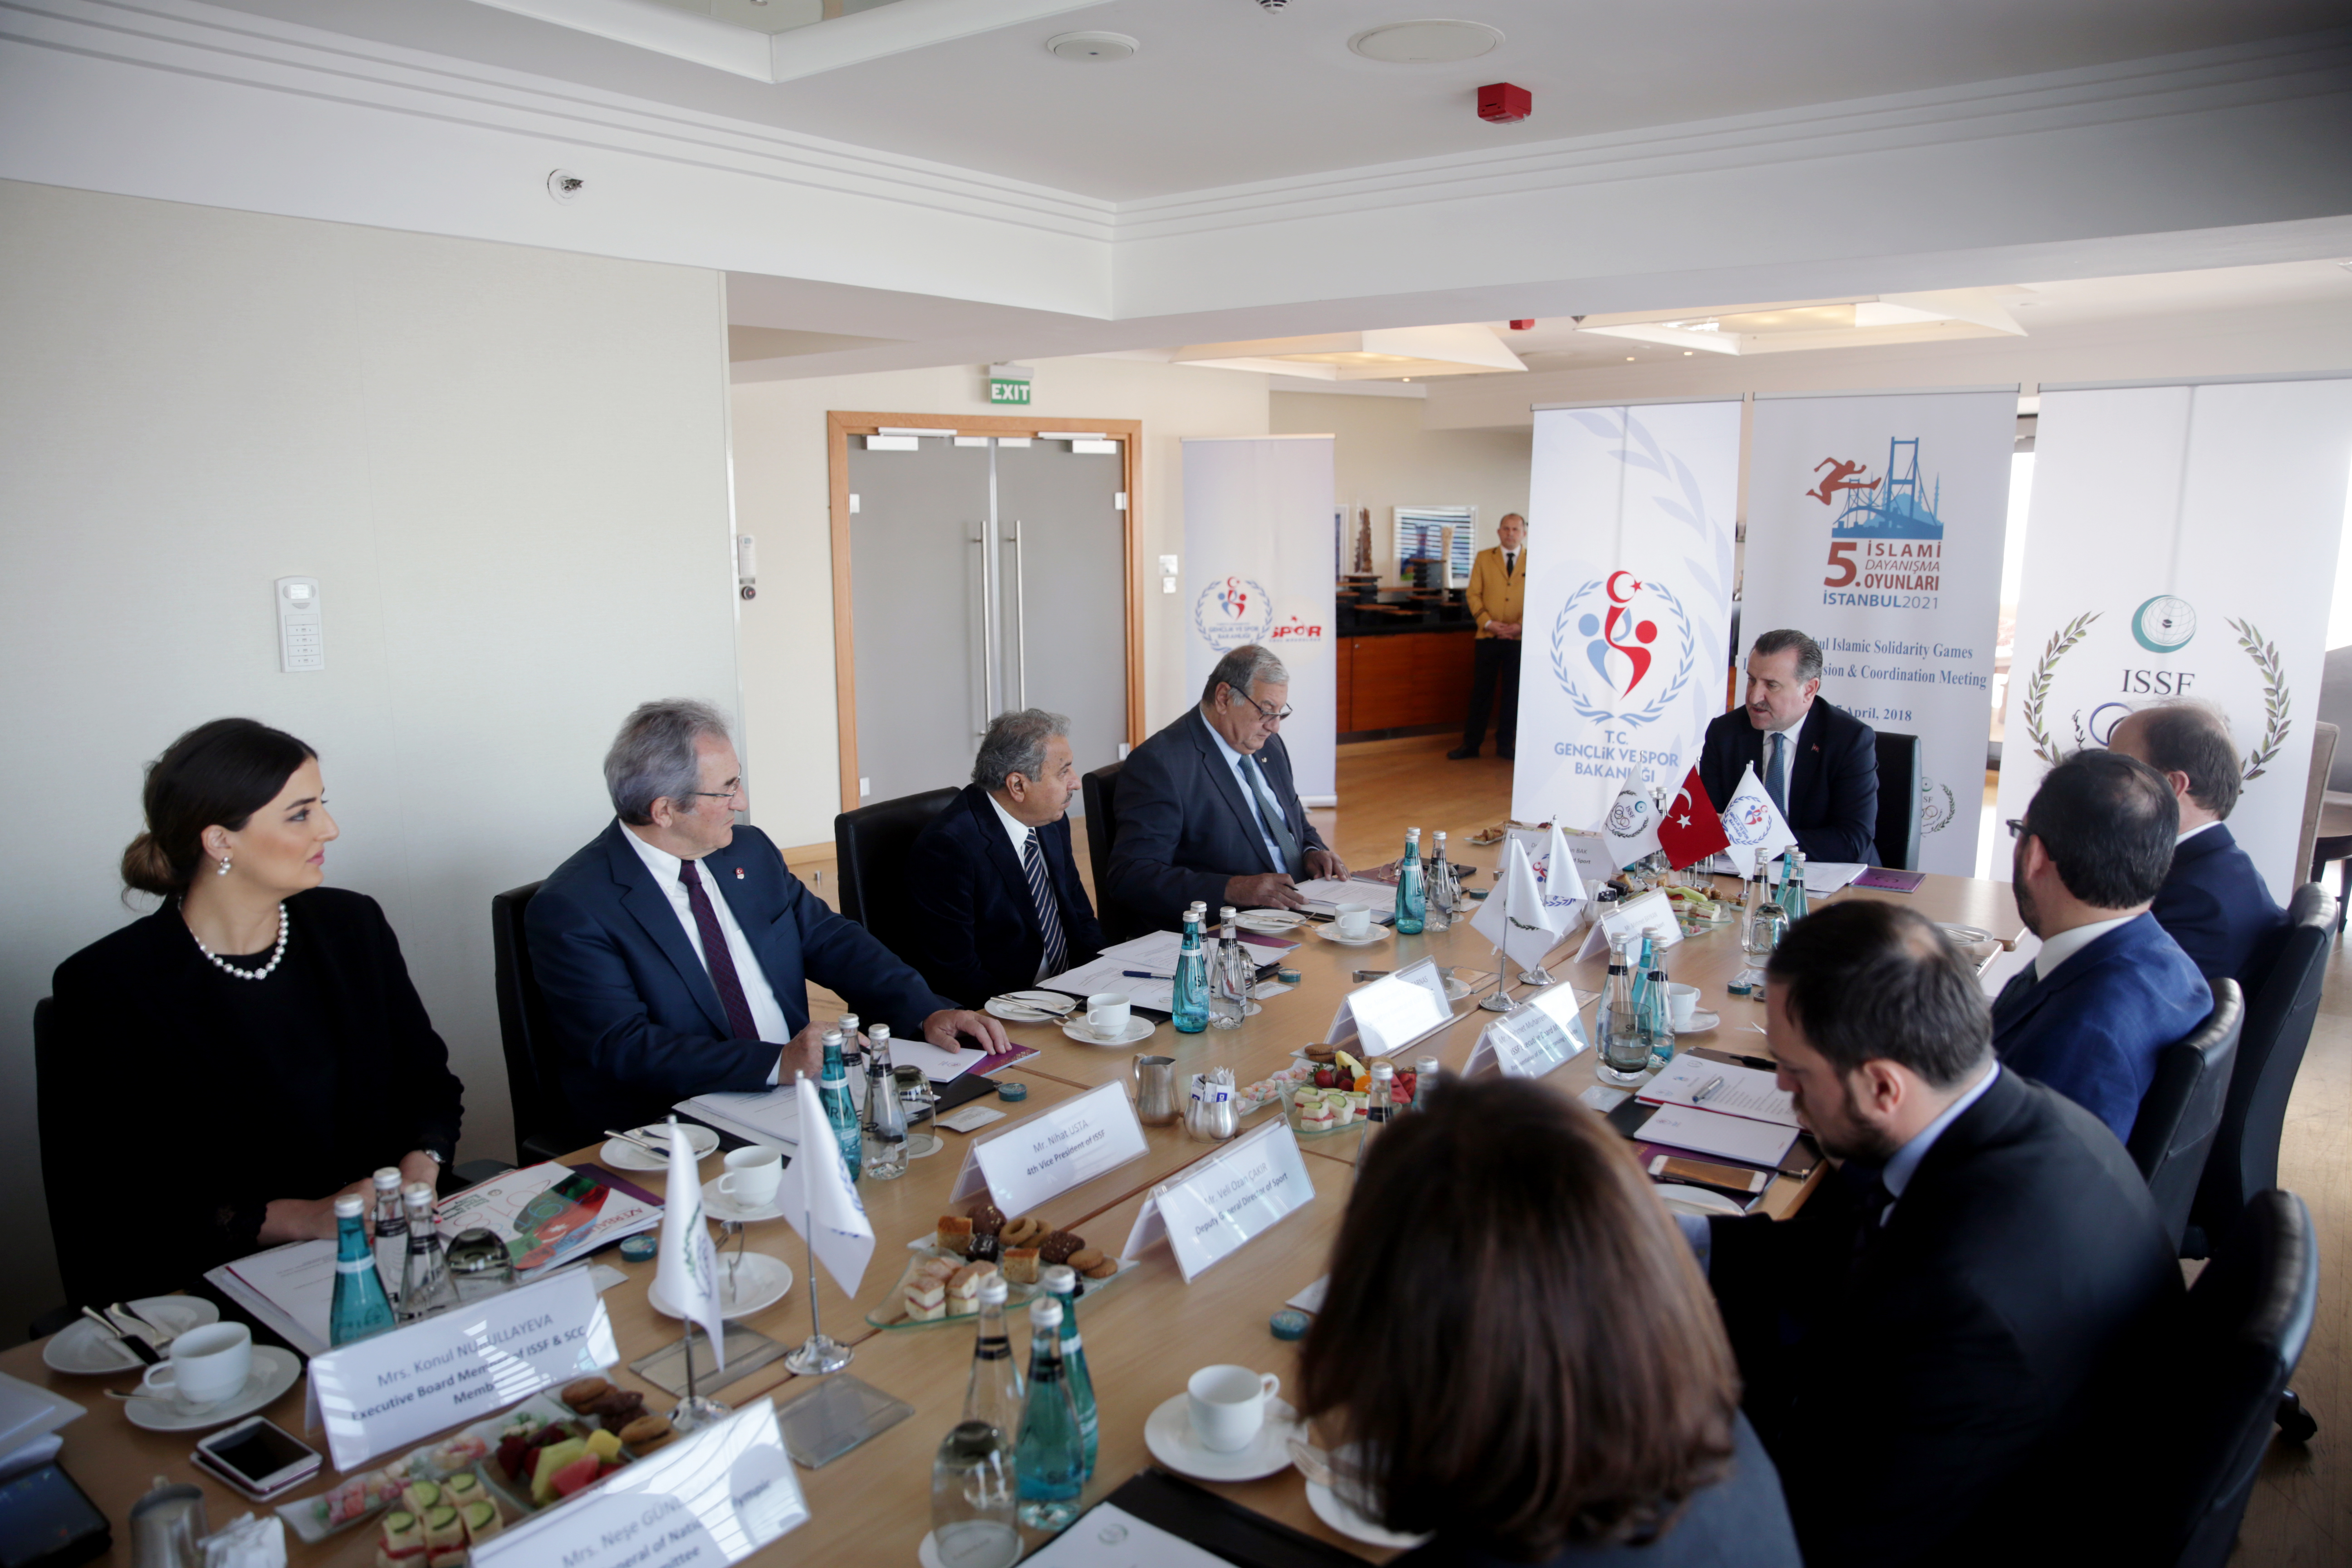  الاجتماع التنسيقي الأول لدورة ألعاب التضامن الإسلامي الخامسة “اسطنبول 2021”